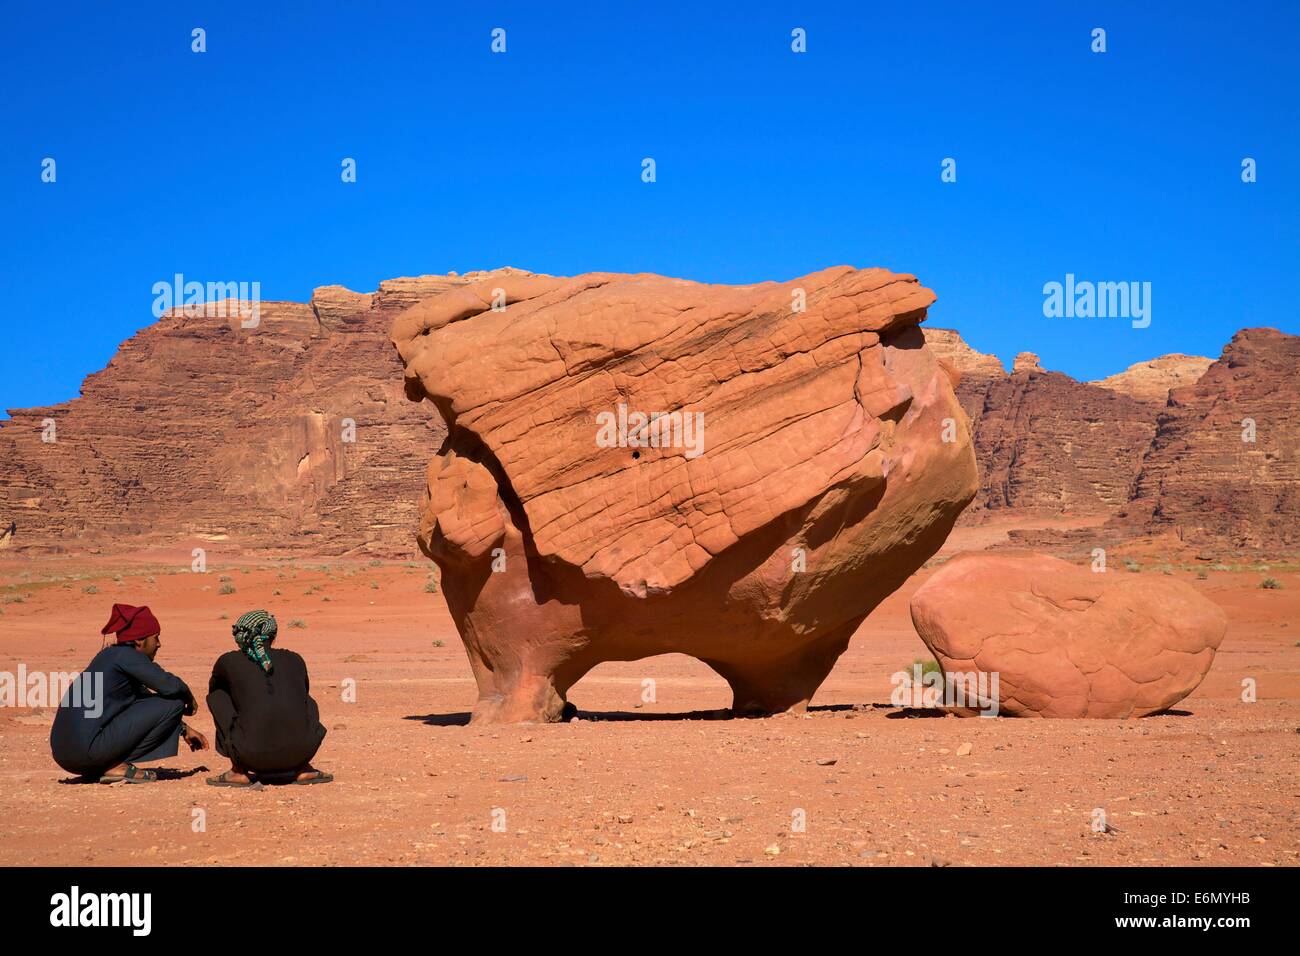 Rock conformata come un maiale volare, Wadi Rum, Giordania, Medio Oriente Foto Stock